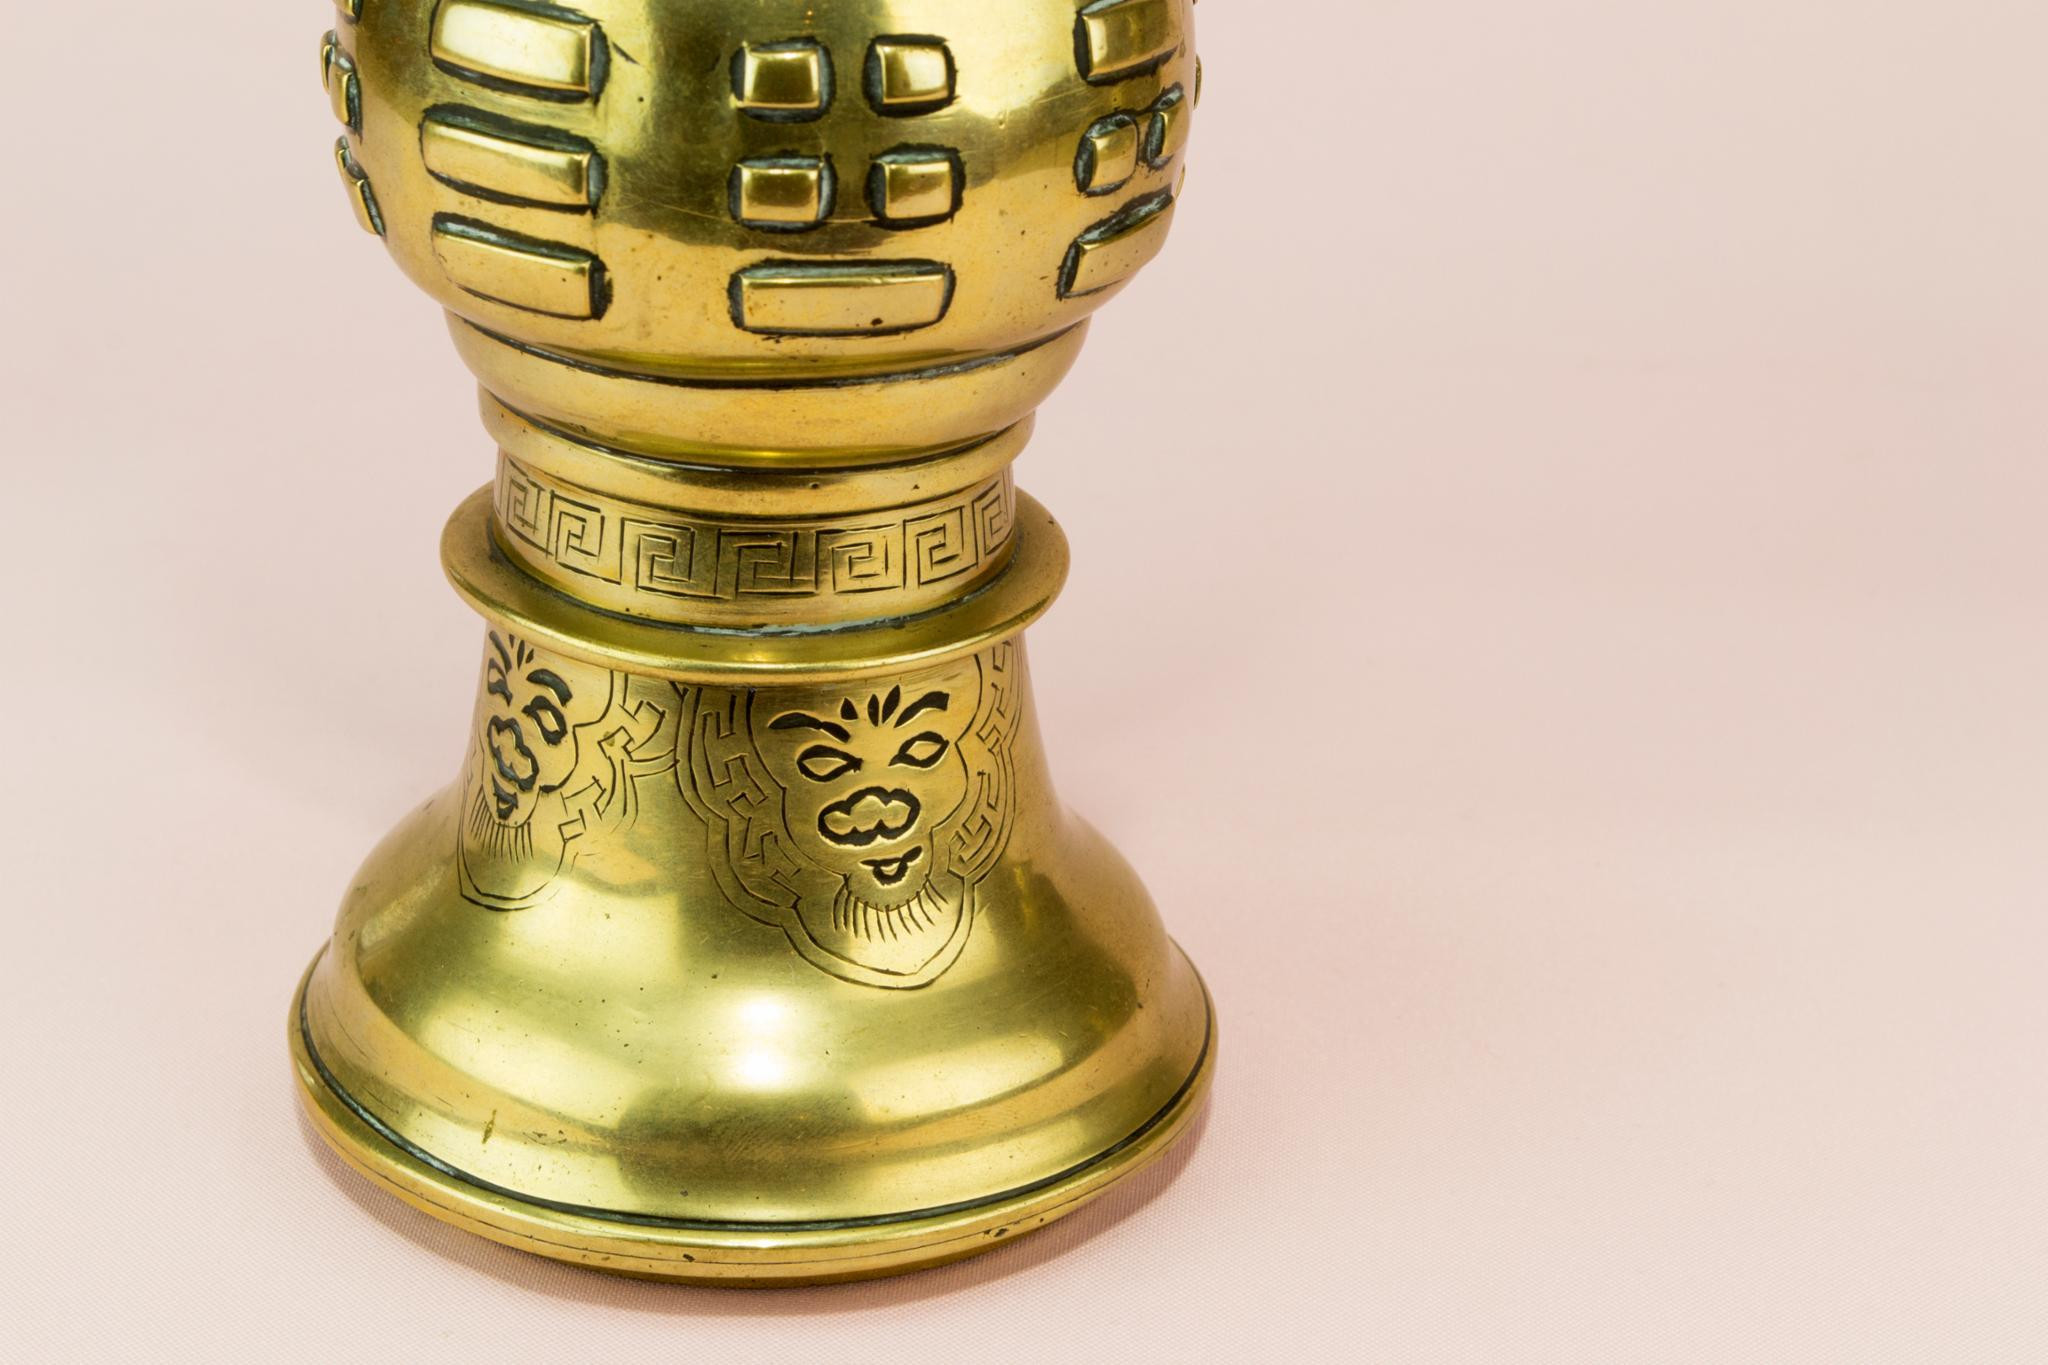 10 Recommended Vintage Brass Vase 2024 free download vintage brass vase of 2 gu shaped brass vases chinese 19th century late 19th century for 2 gu shaped brass vases chinese 19th century